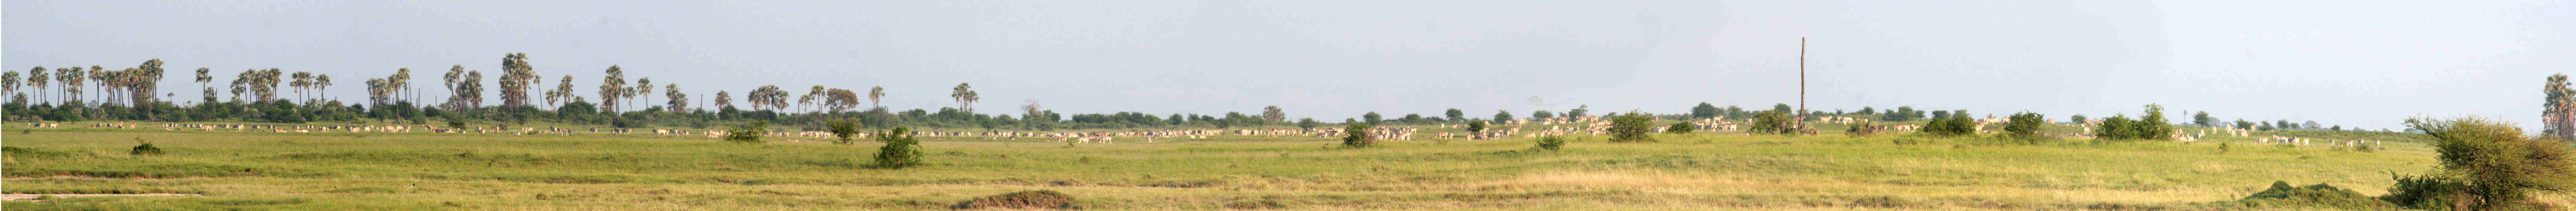 zebra panorama